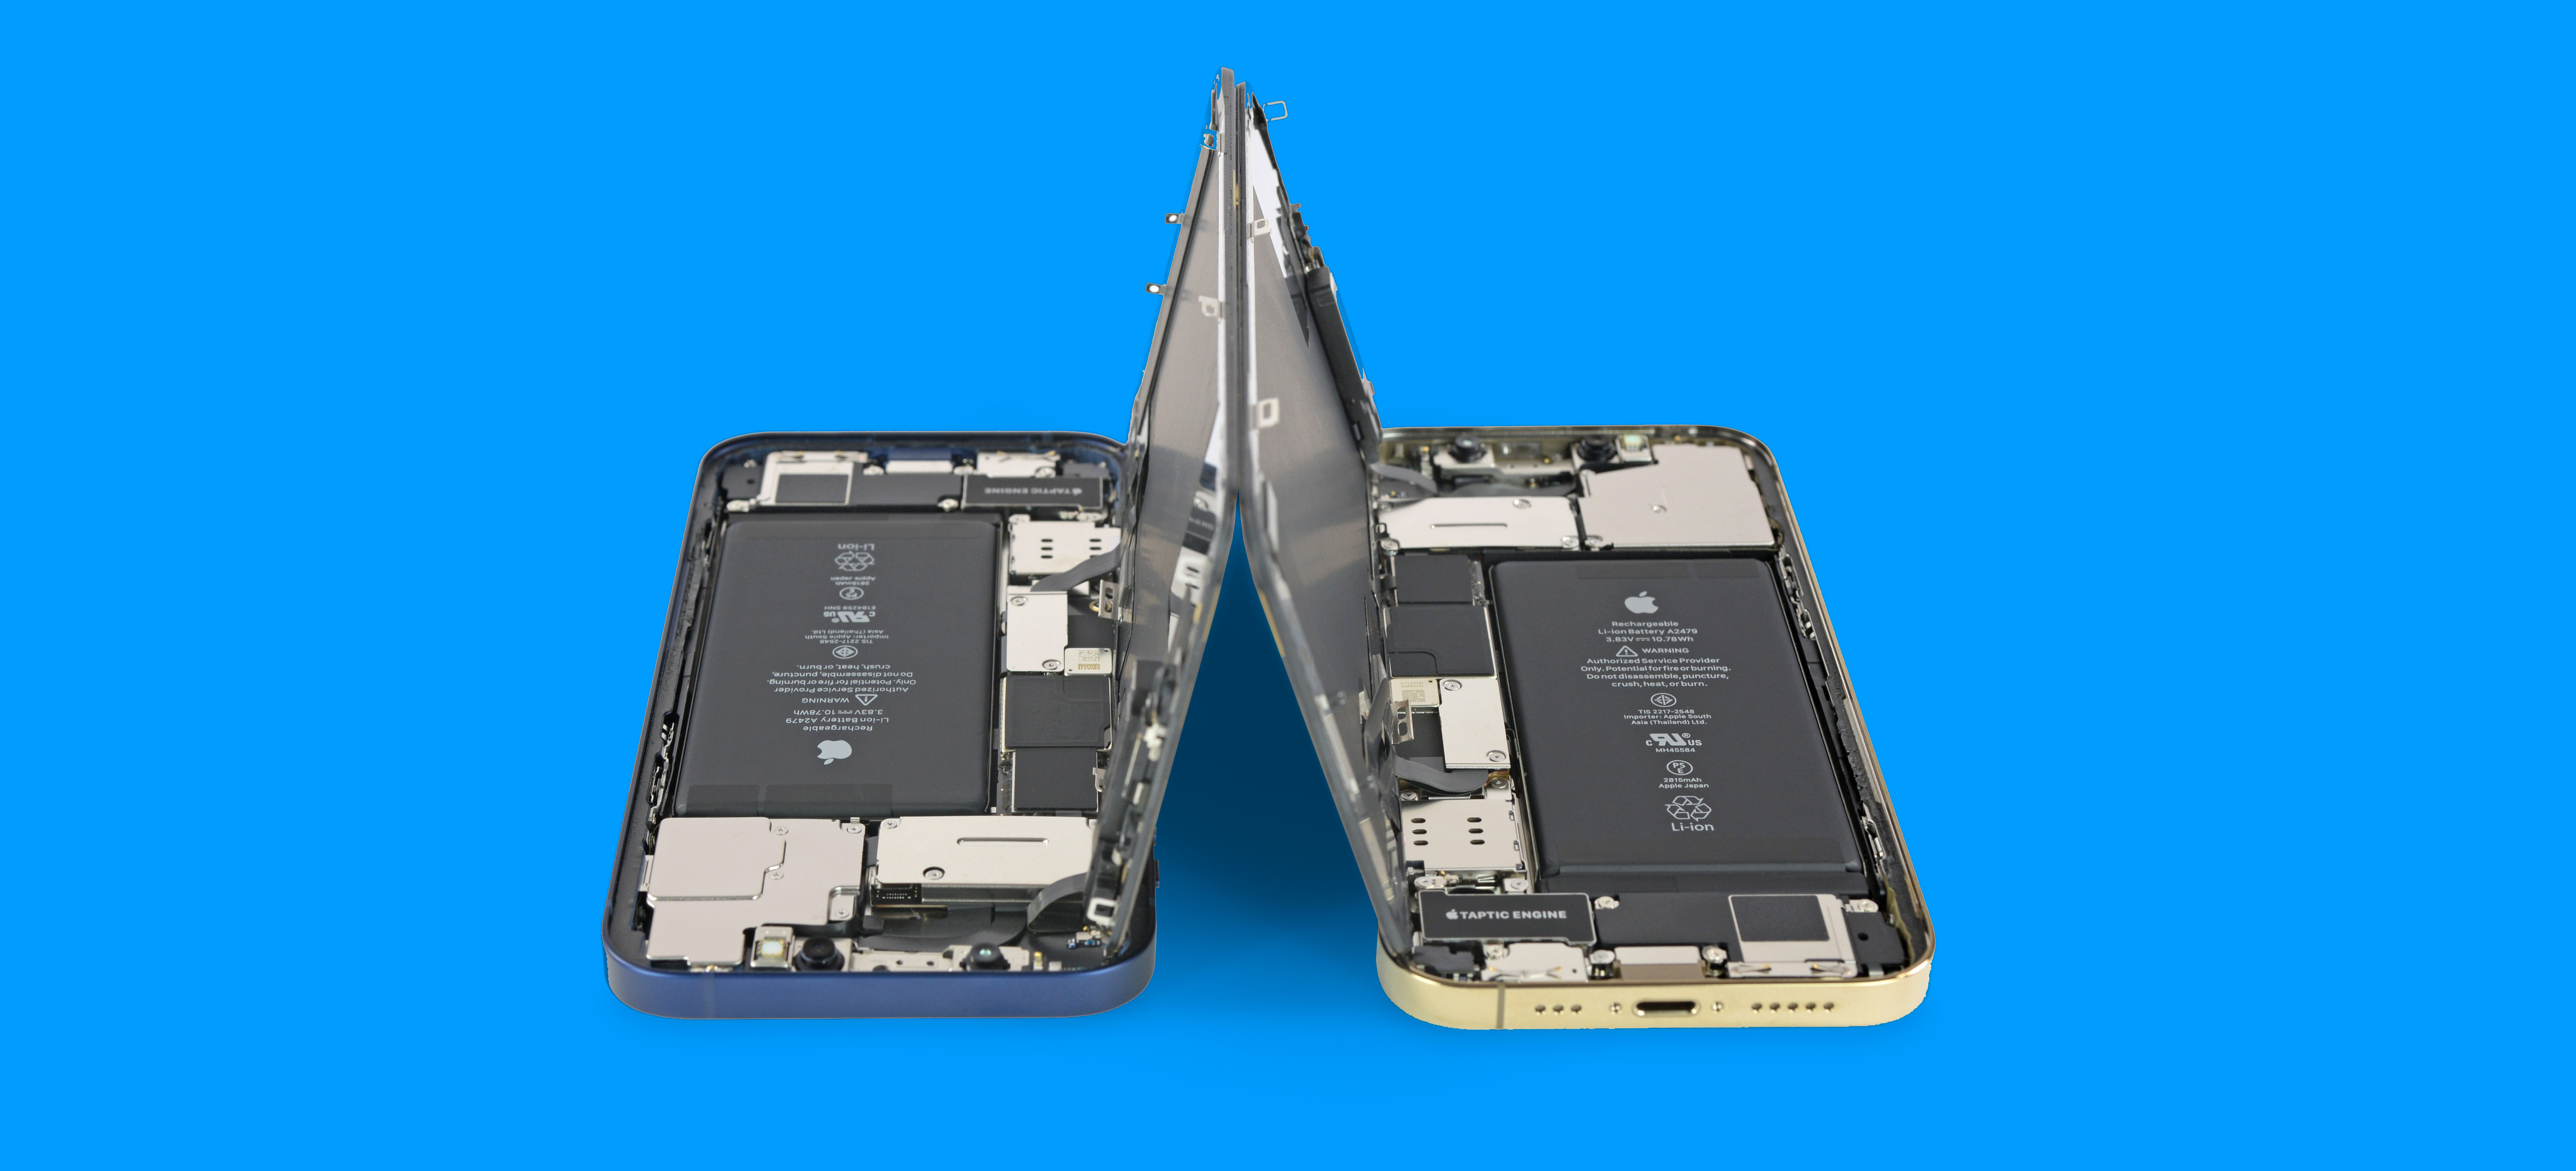 أخبار 25 أكتوبر 2020 iFixit: iPhone 12 سهل الإصلاح بشكل معقول